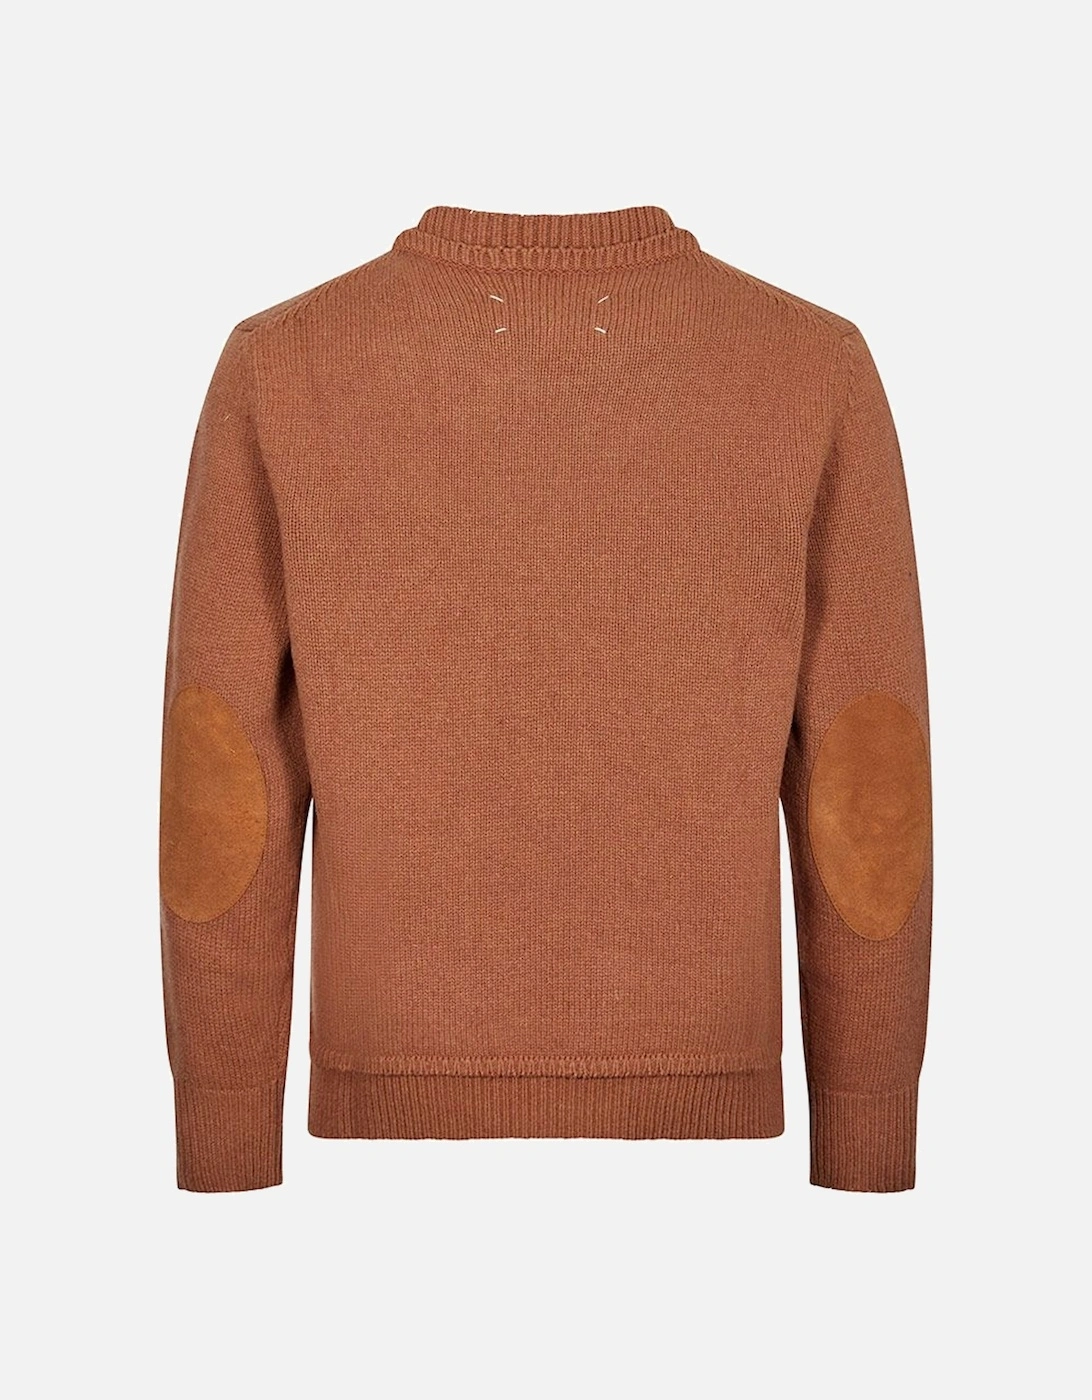 Mens Wool Sweater Brown